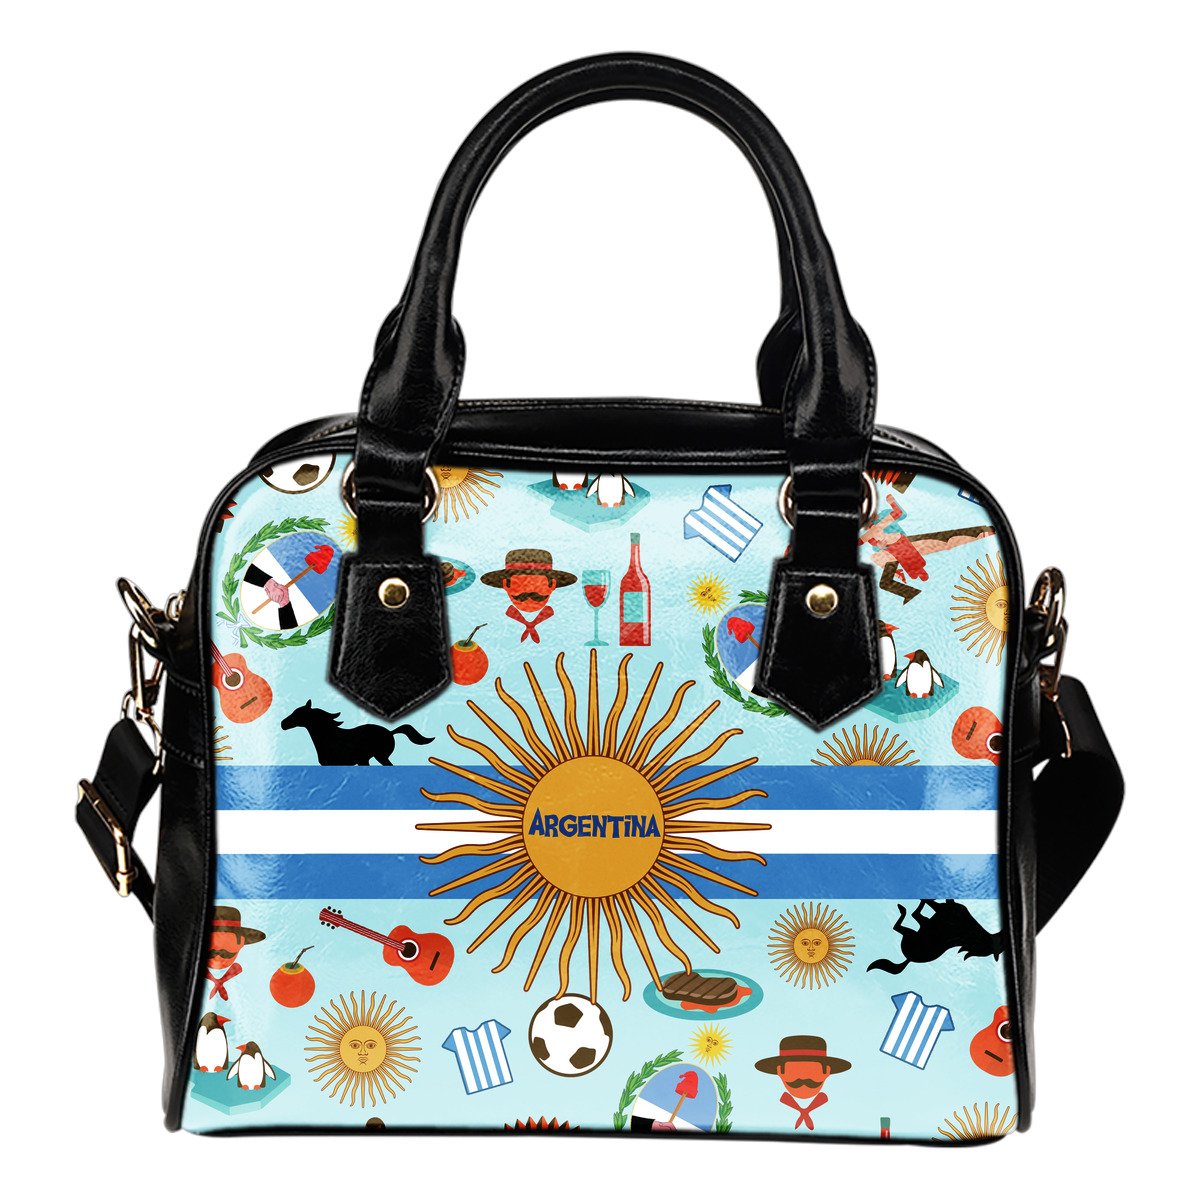 argentina-bags-argentina-symbols-shoulder-handbags